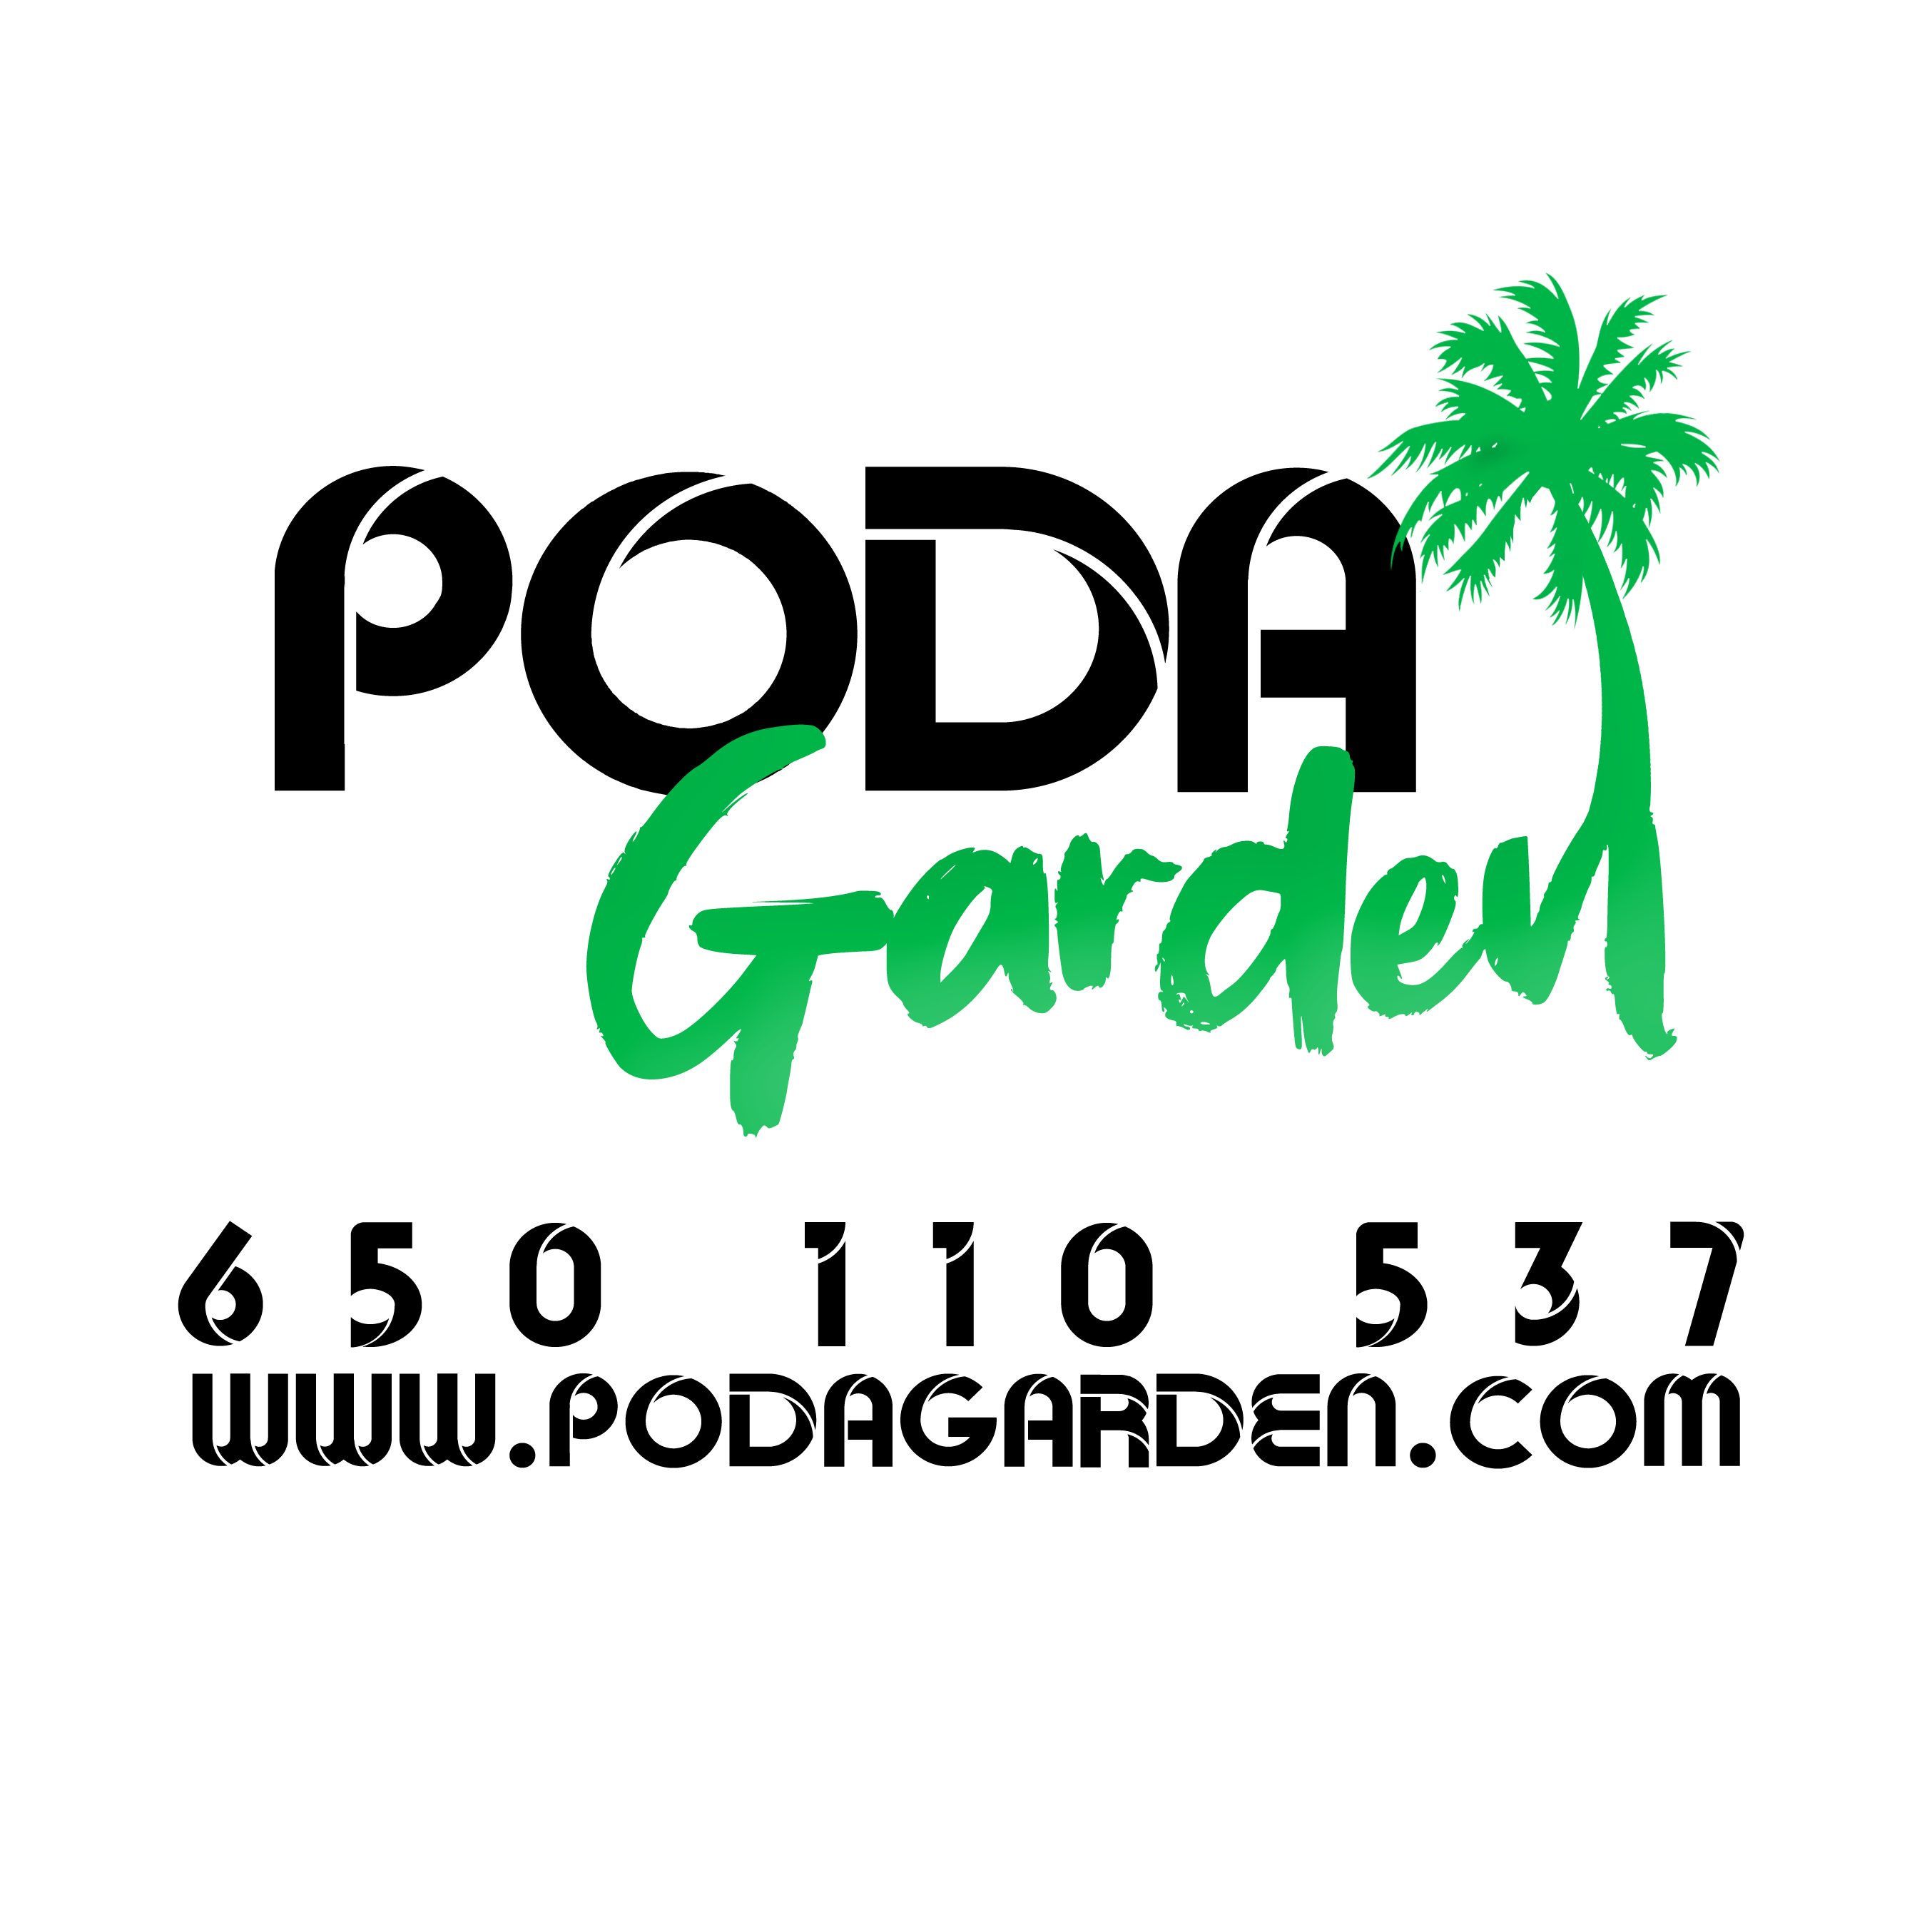 Podagarden - Lawn Care Service - Jerez de la Frontera - 650 11 05 37 Spain | ShowMeLocal.com